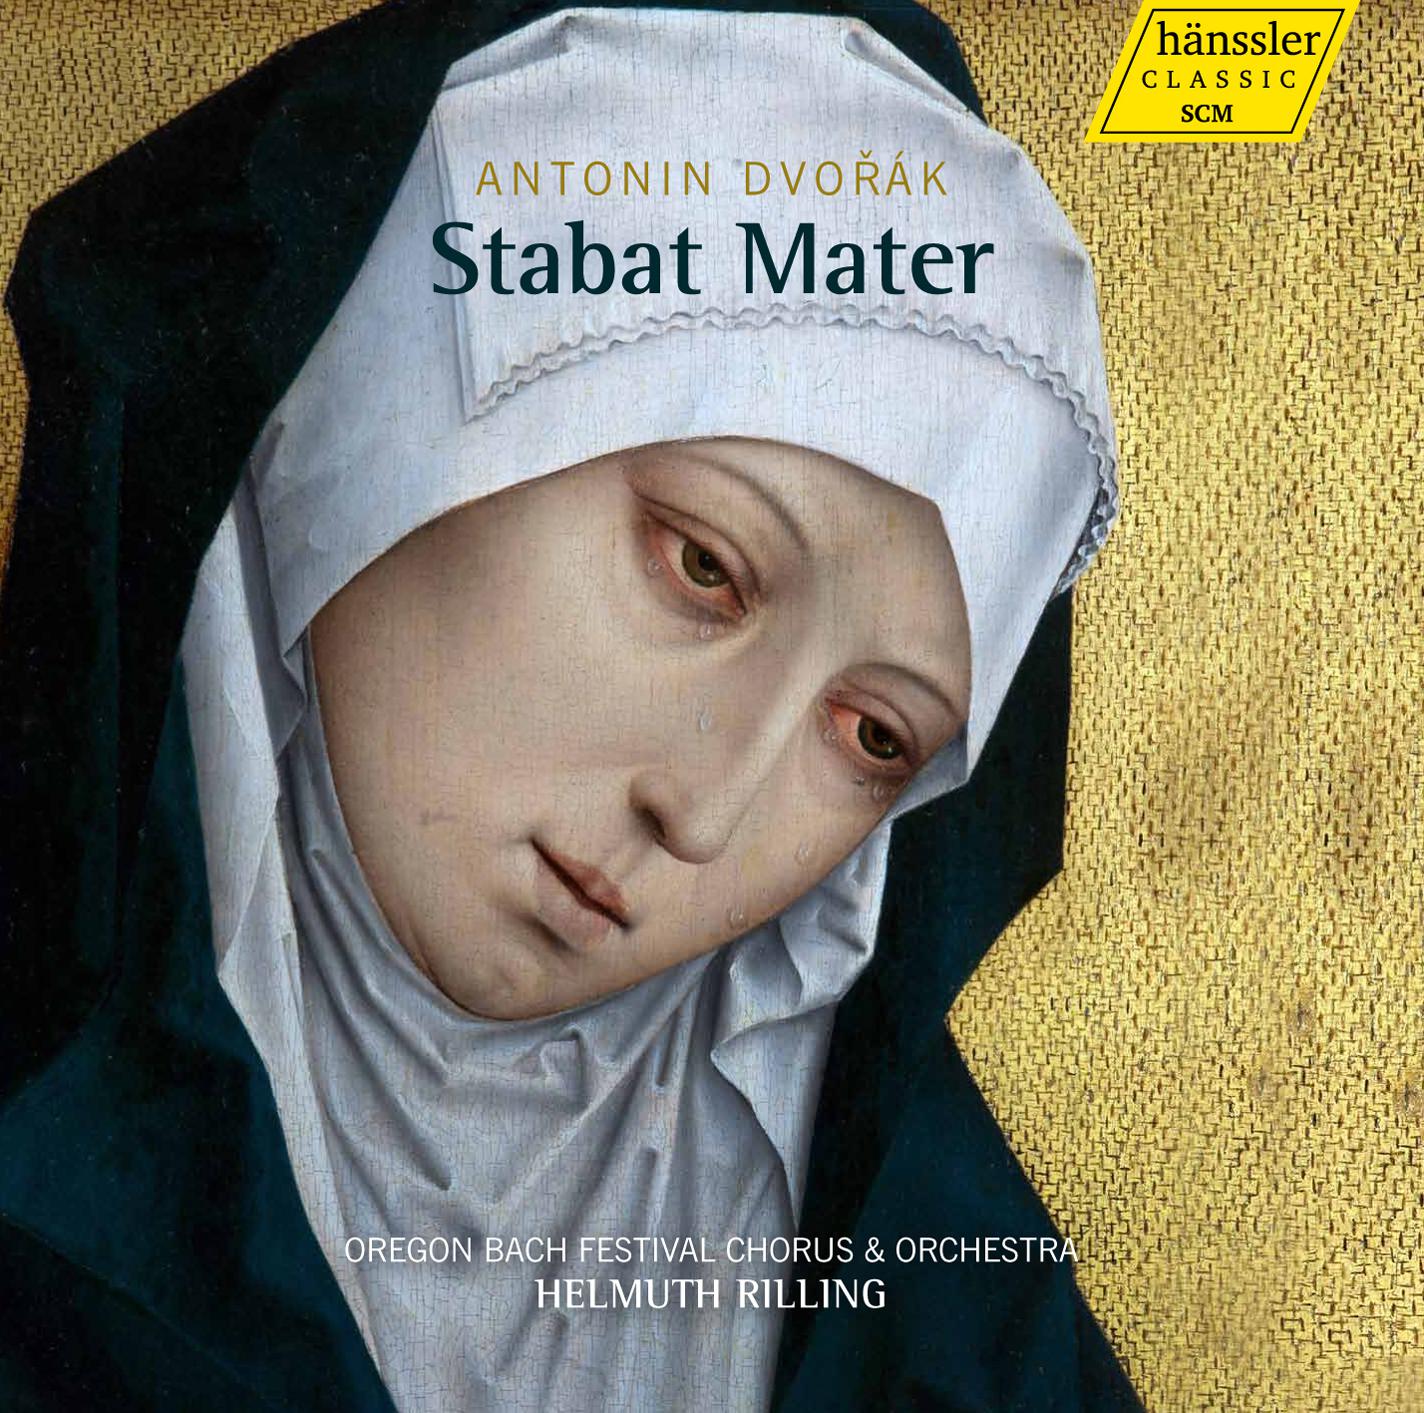 Dvoa k: Stabat Mater, Op. 58, B. 71